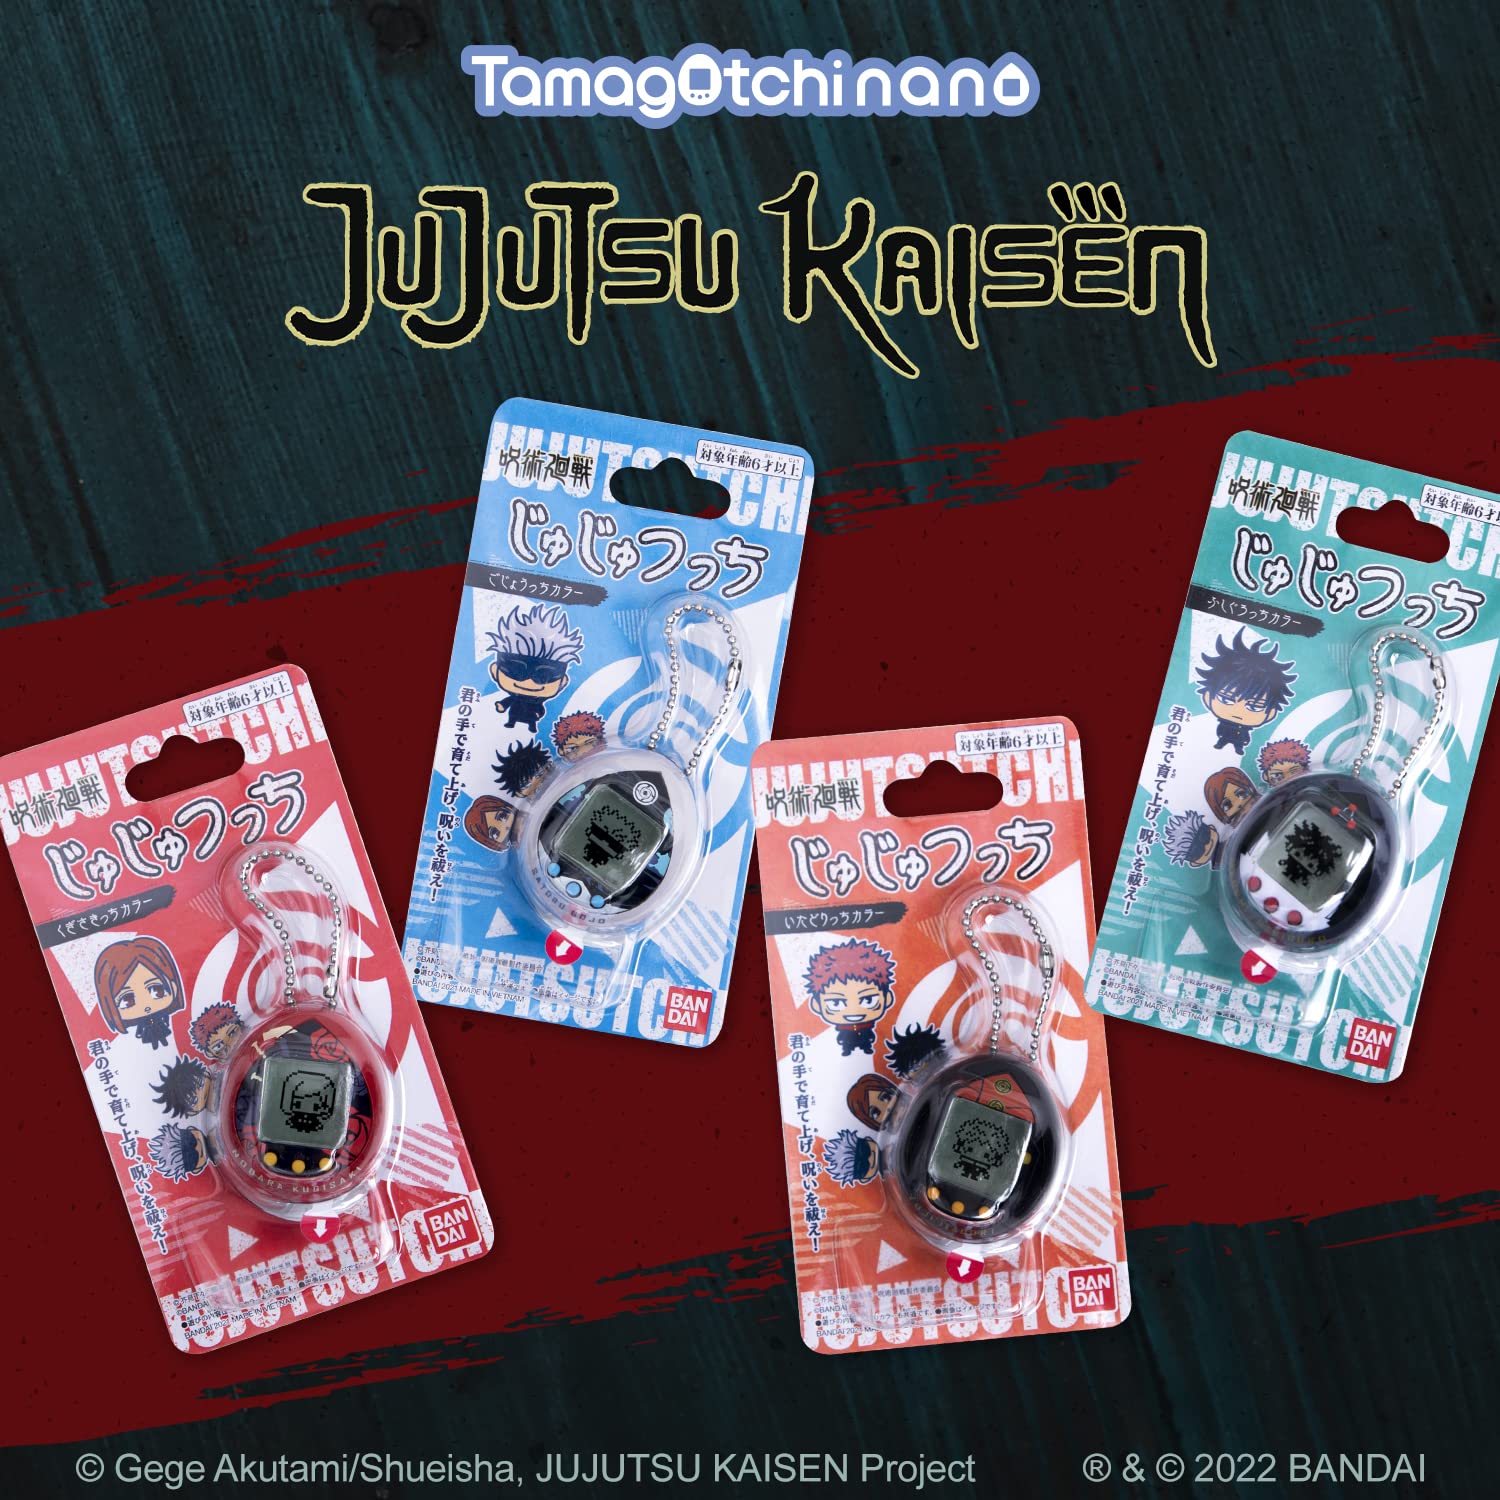 Tamagotchi nano x Jujutsu Kaisen - Megumi Fushiguro (Japanese Version)